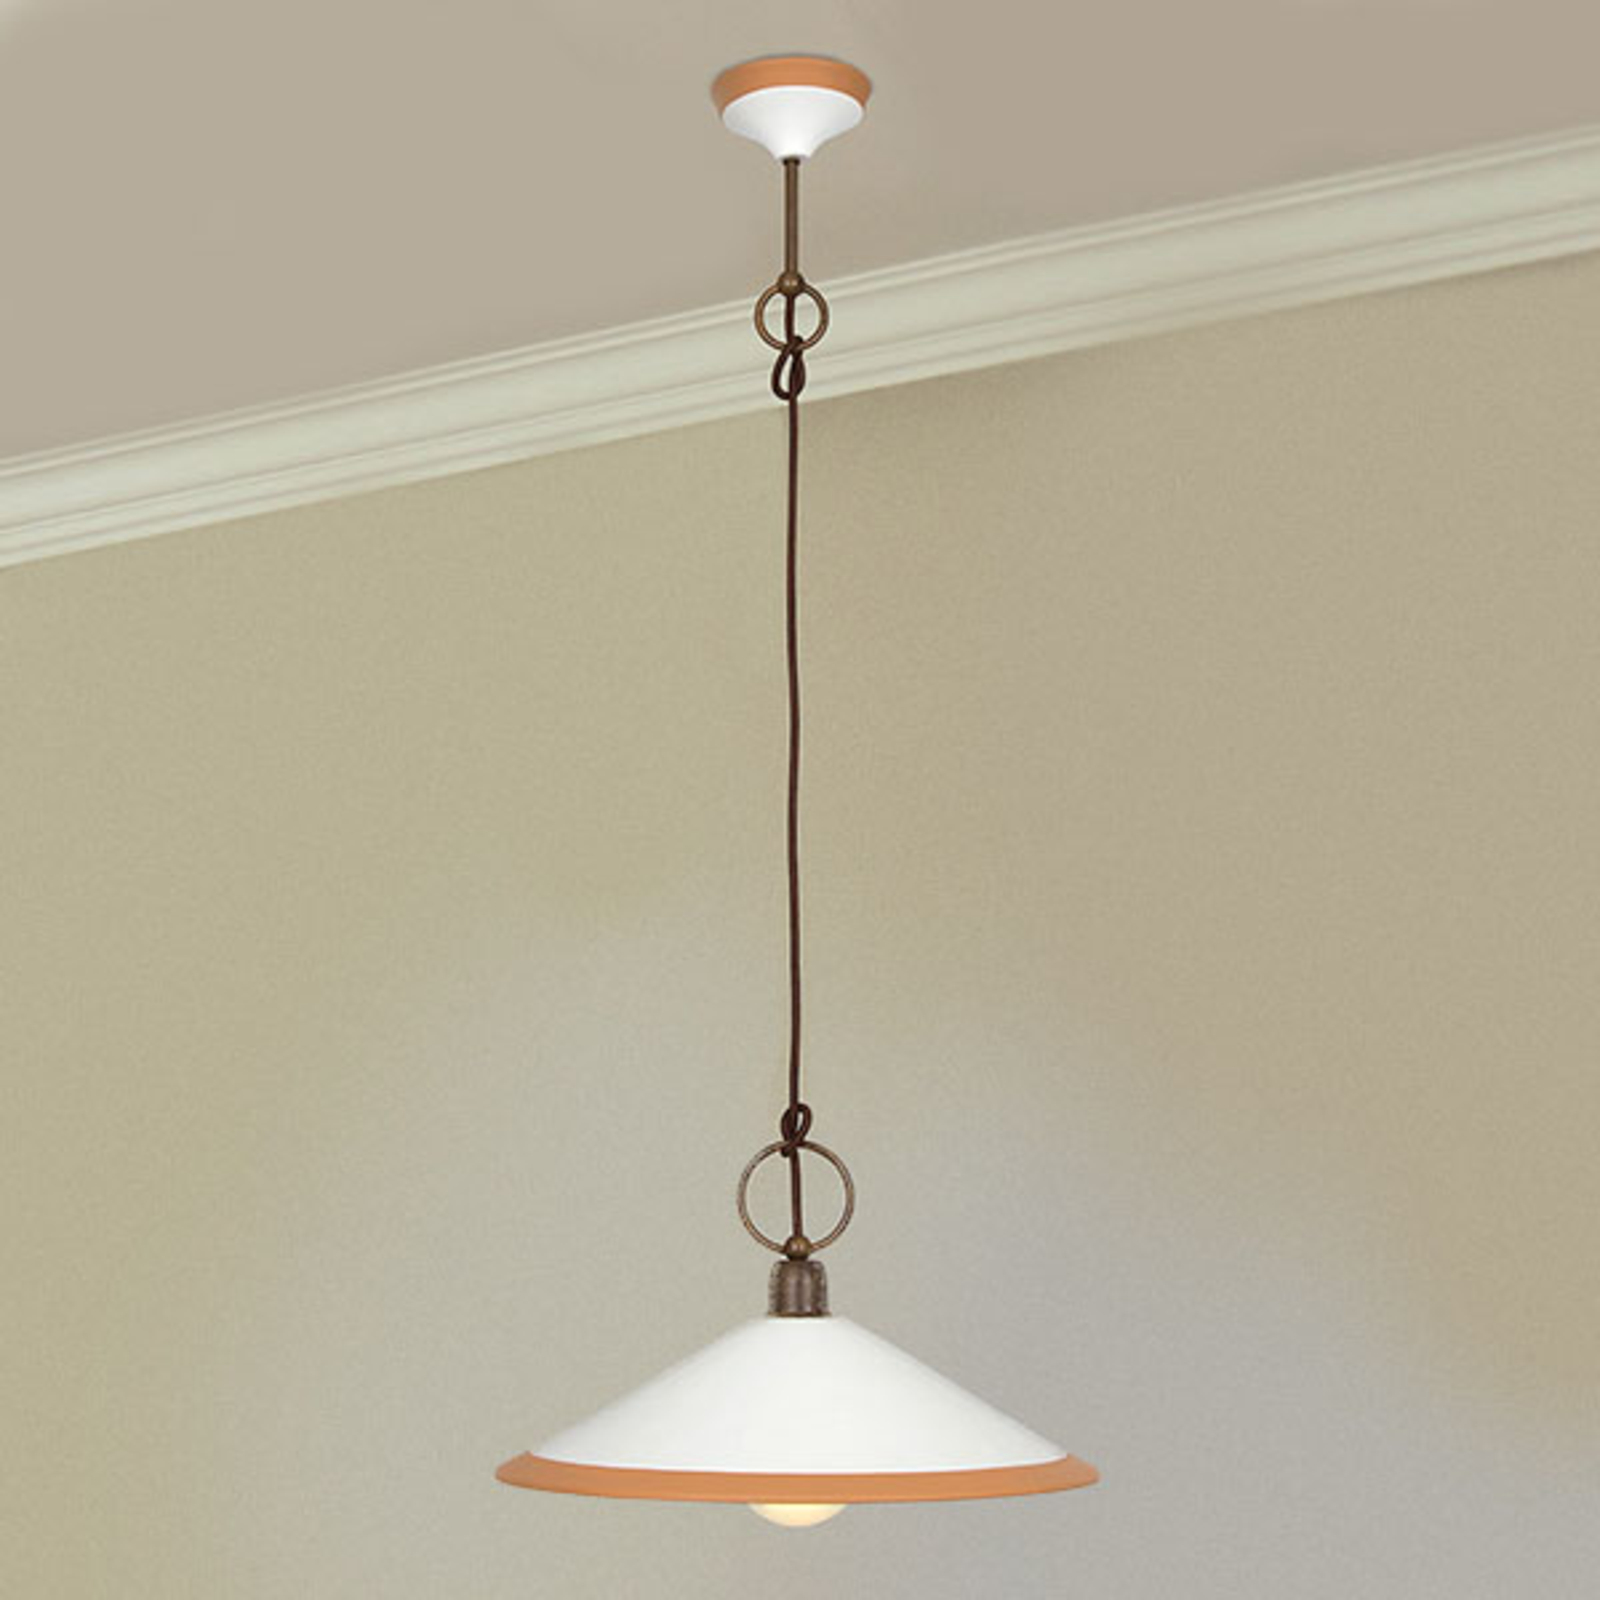 Hanglamp 4560/S41, bruin, wit, oker